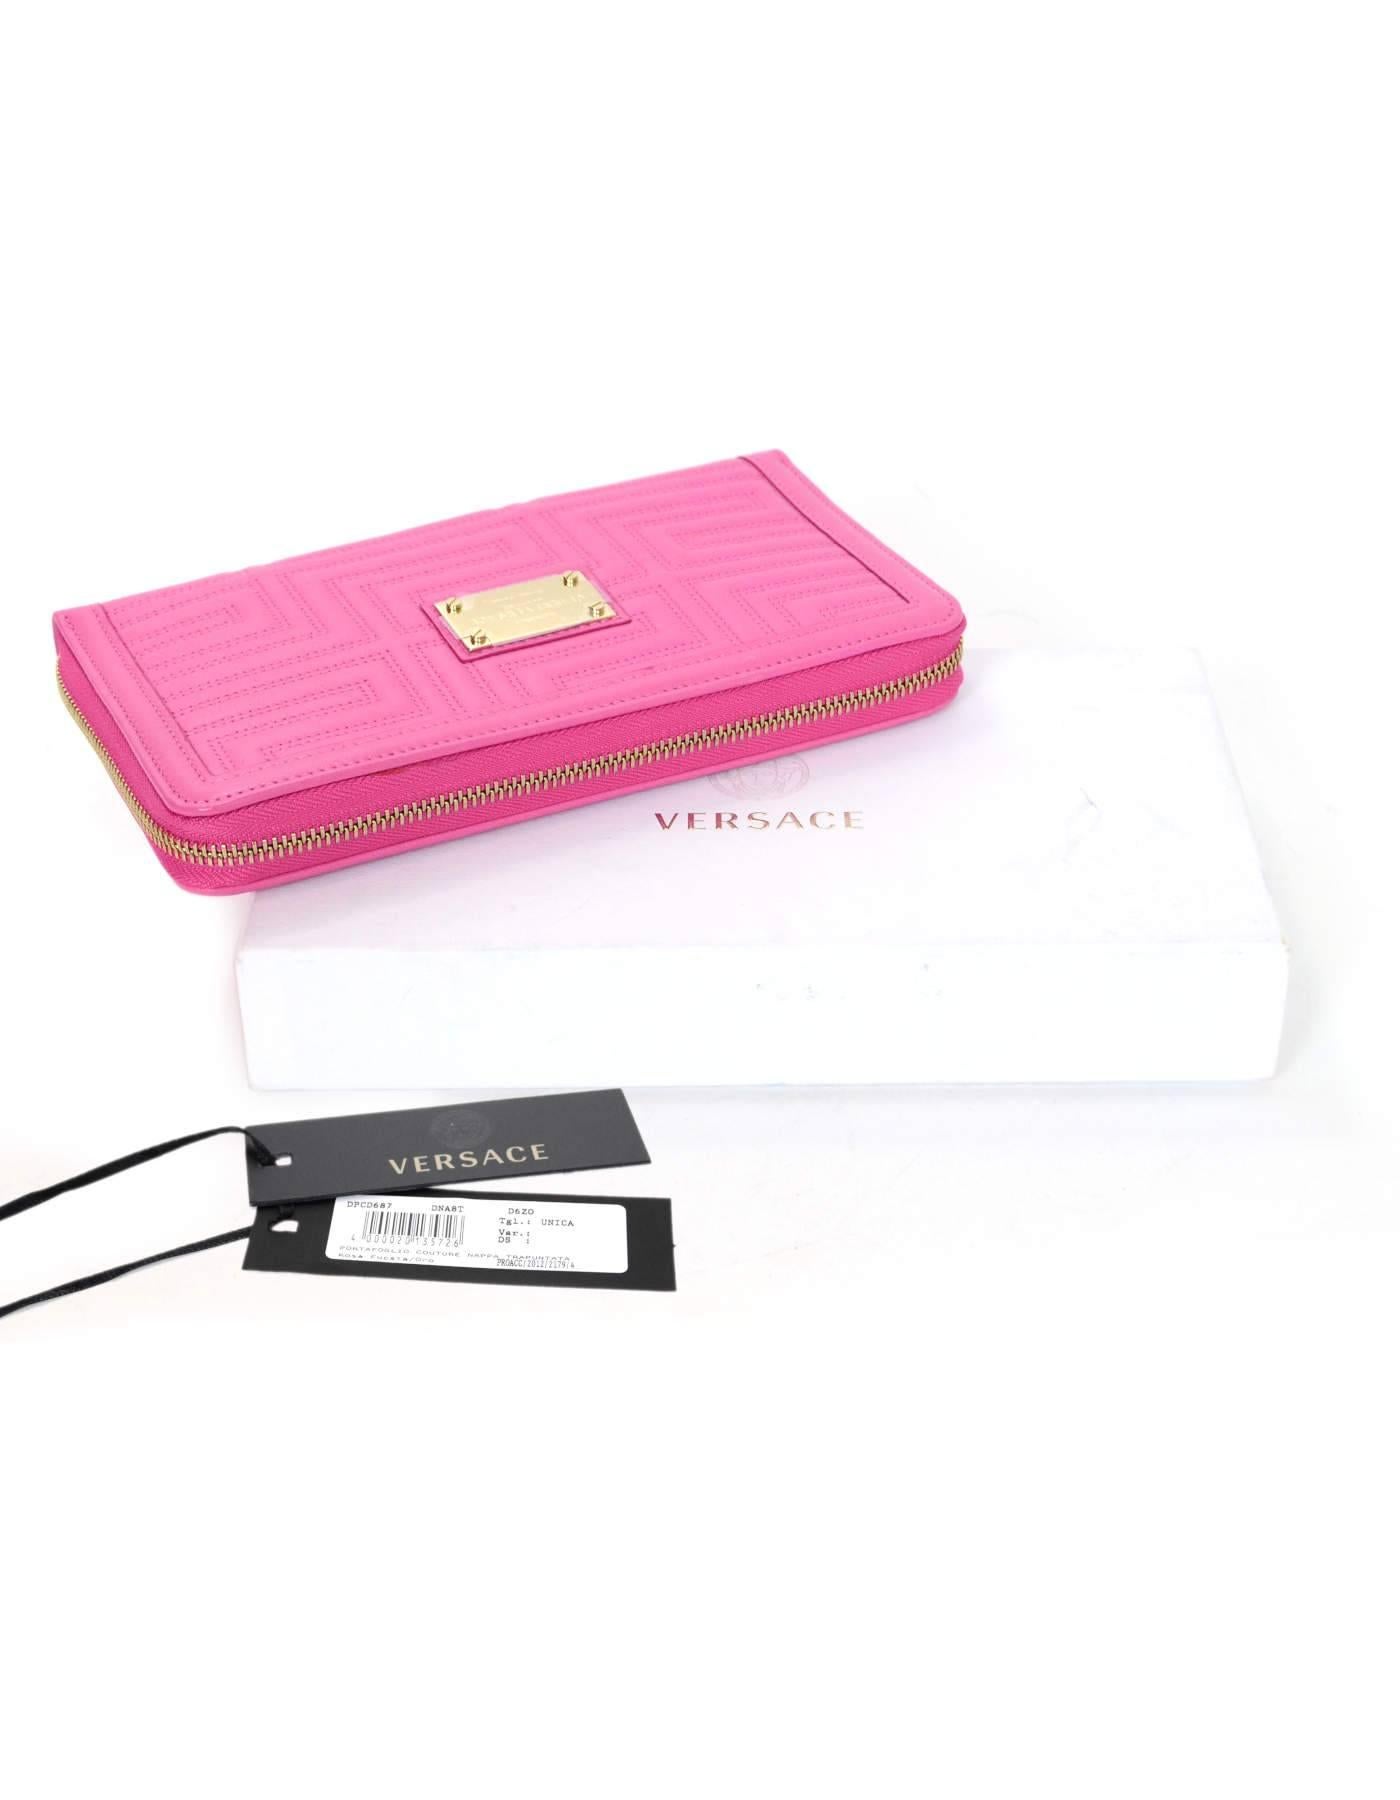 Versace Pink Leather Zip Around XL Wallet NIB  4